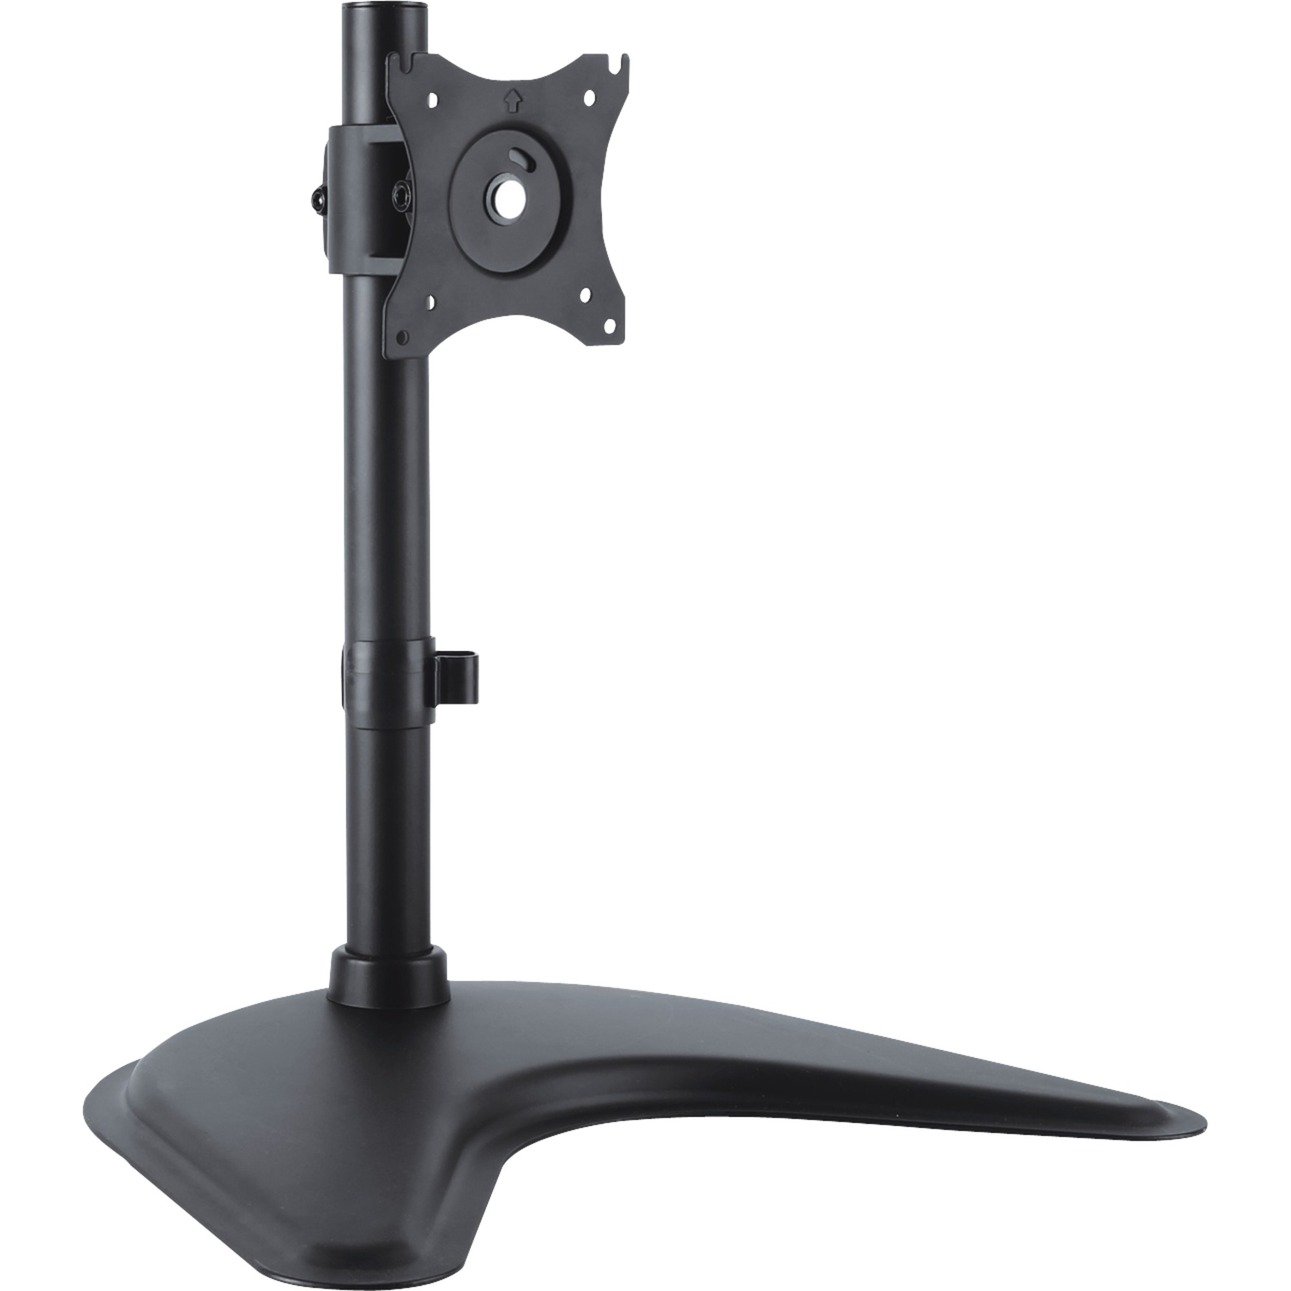 Image of Alternate - Universal Single Monitor Ständer, Standfuß online einkaufen bei Alternate